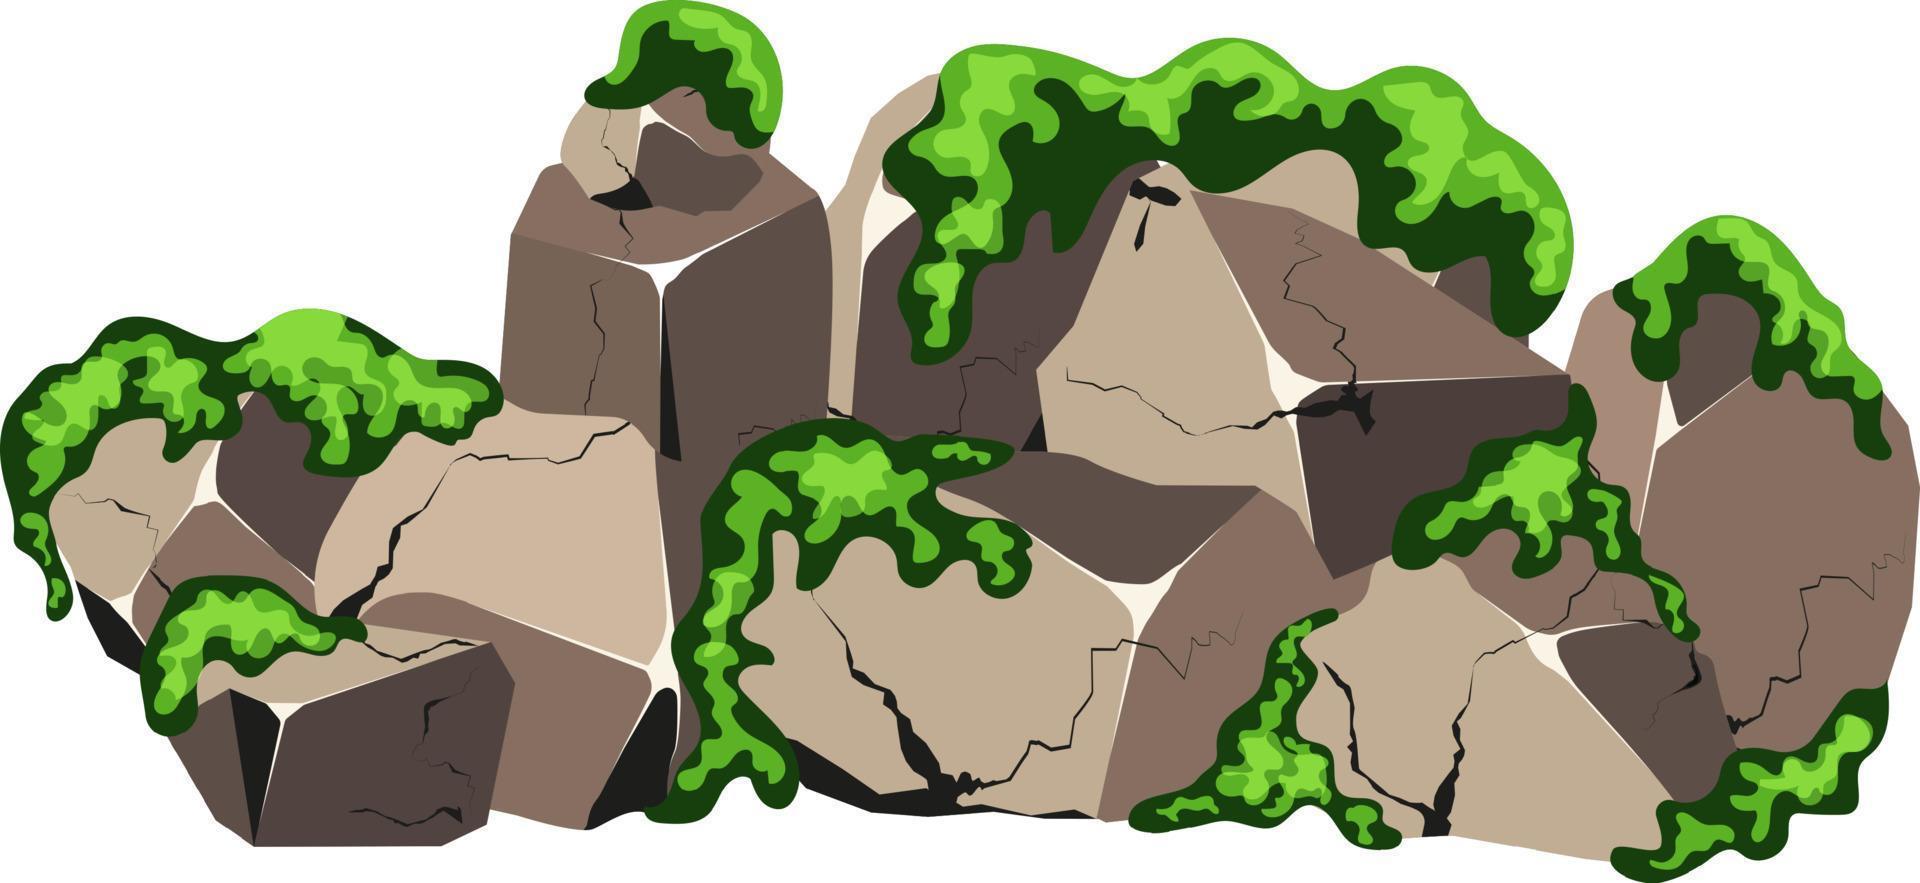 coleção de pedras de várias formas e seixos moss.costal, paralelepípedos, cascalho, minerais e formações geológicas. fragmentos de rocha, pedregulhos e material de construção. vetor